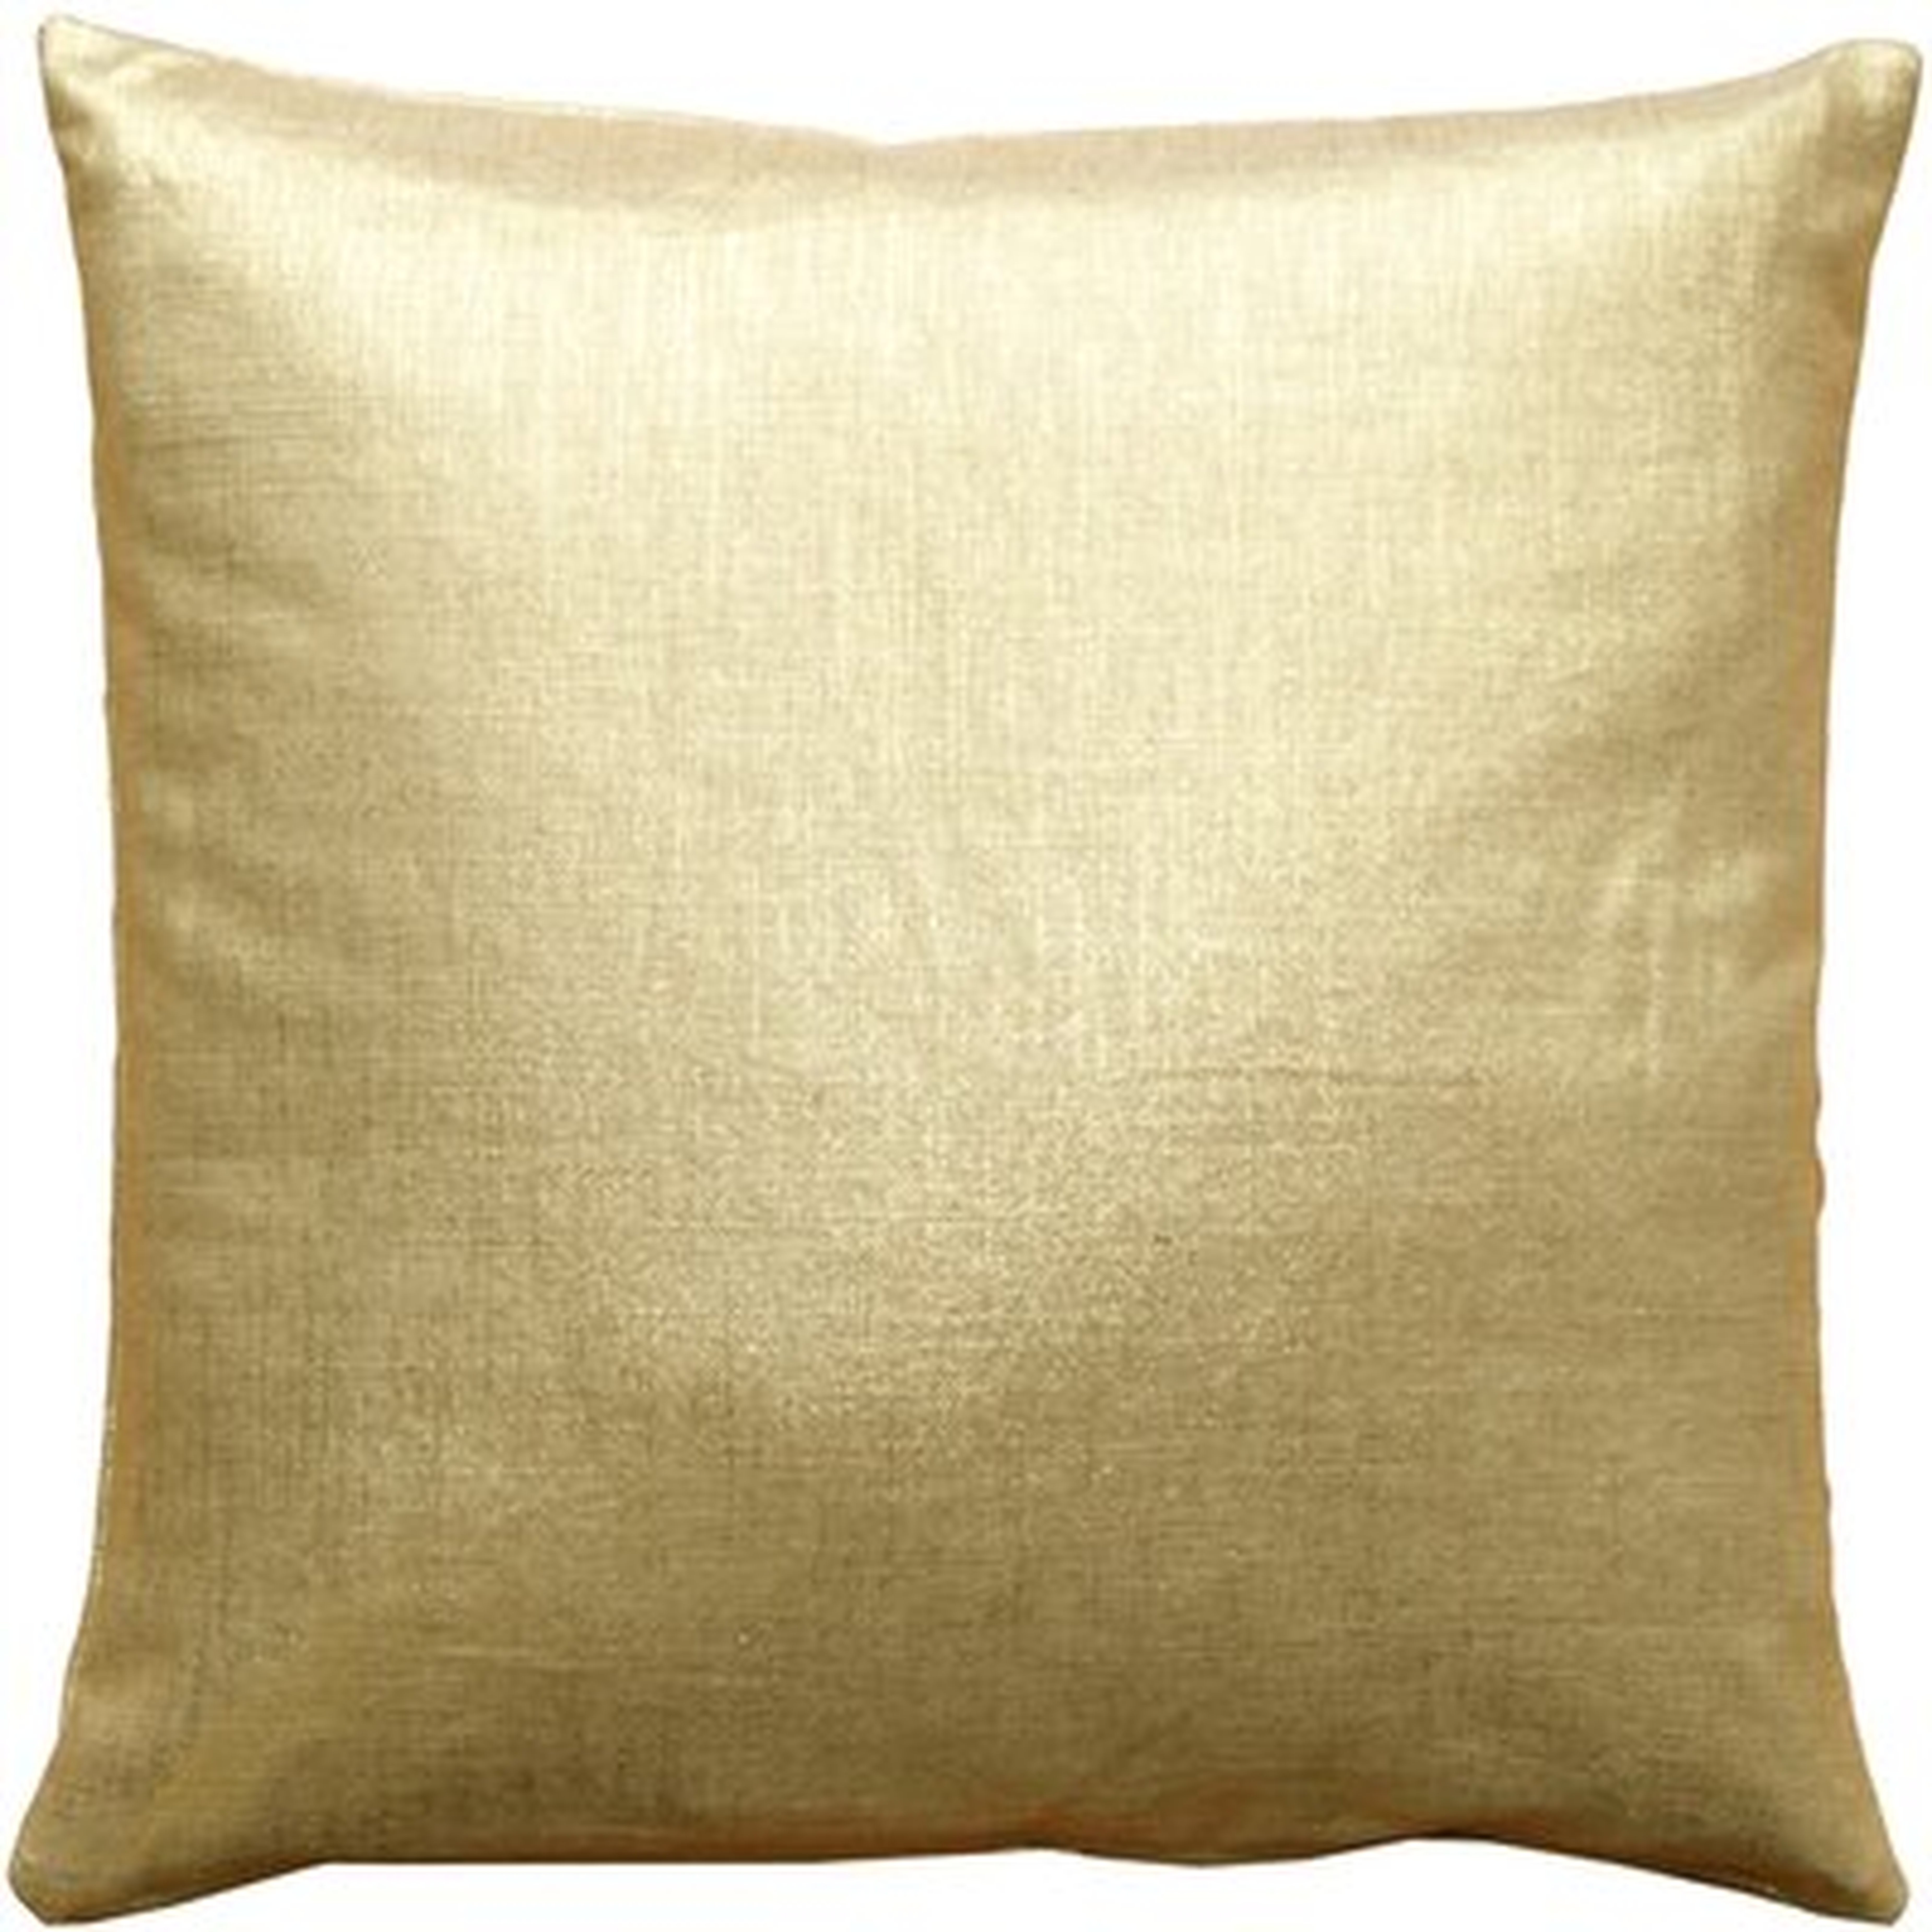 Haelf Linen Throw Pillow - Wayfair